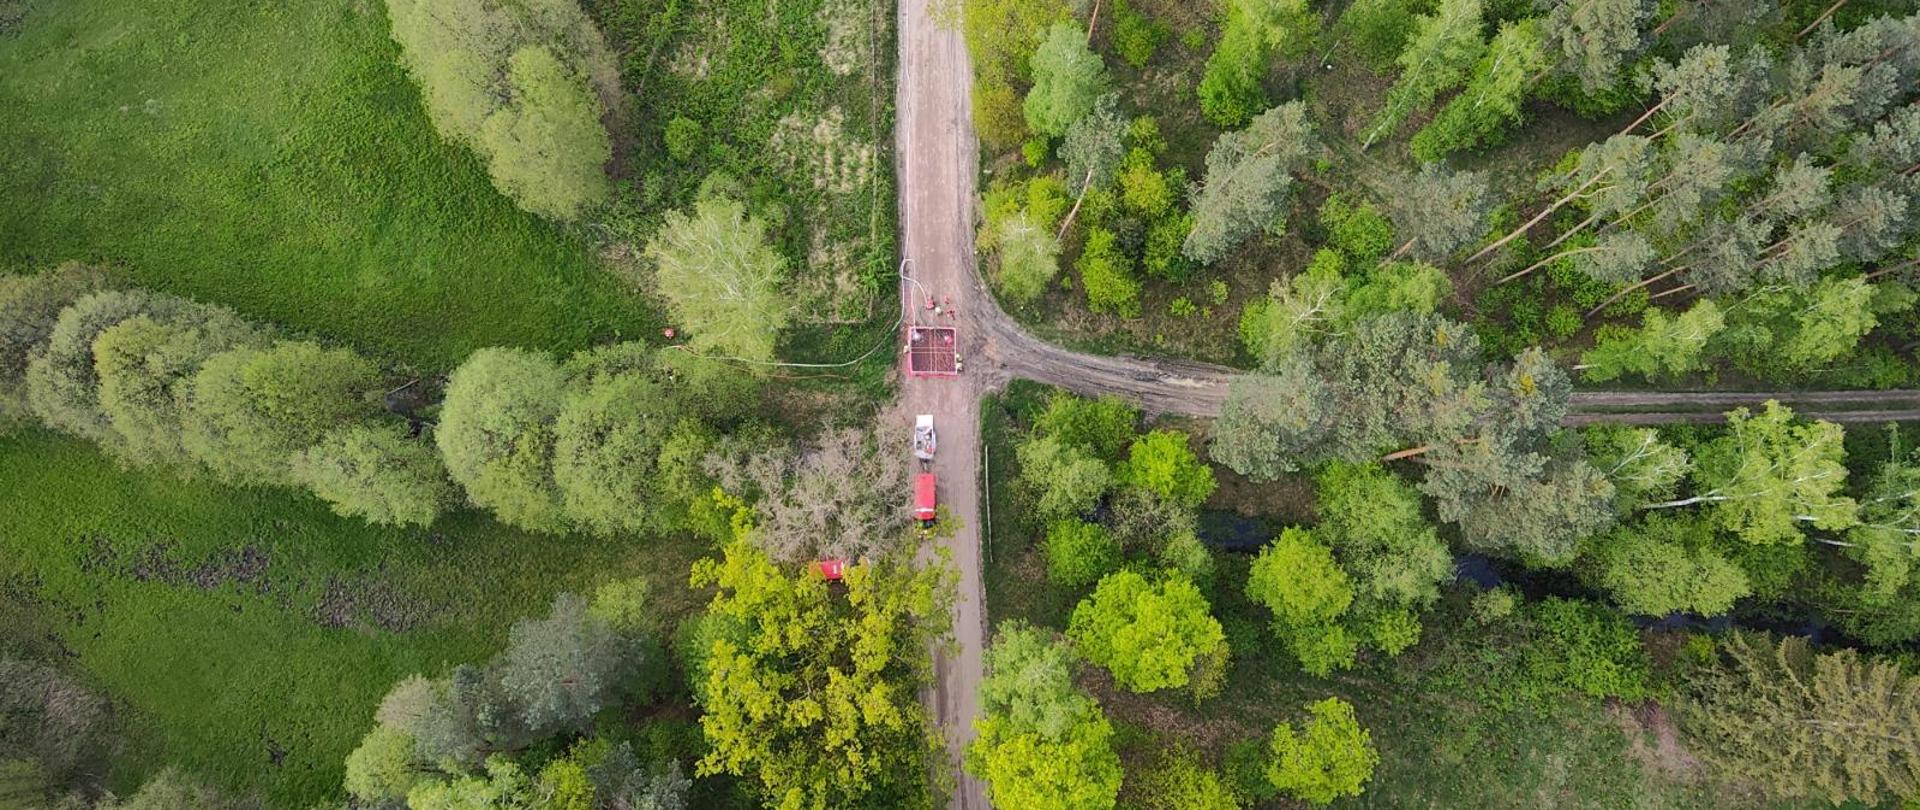 Zdjęcie z drona. Na zdjęciu widoczny las i strazacy.